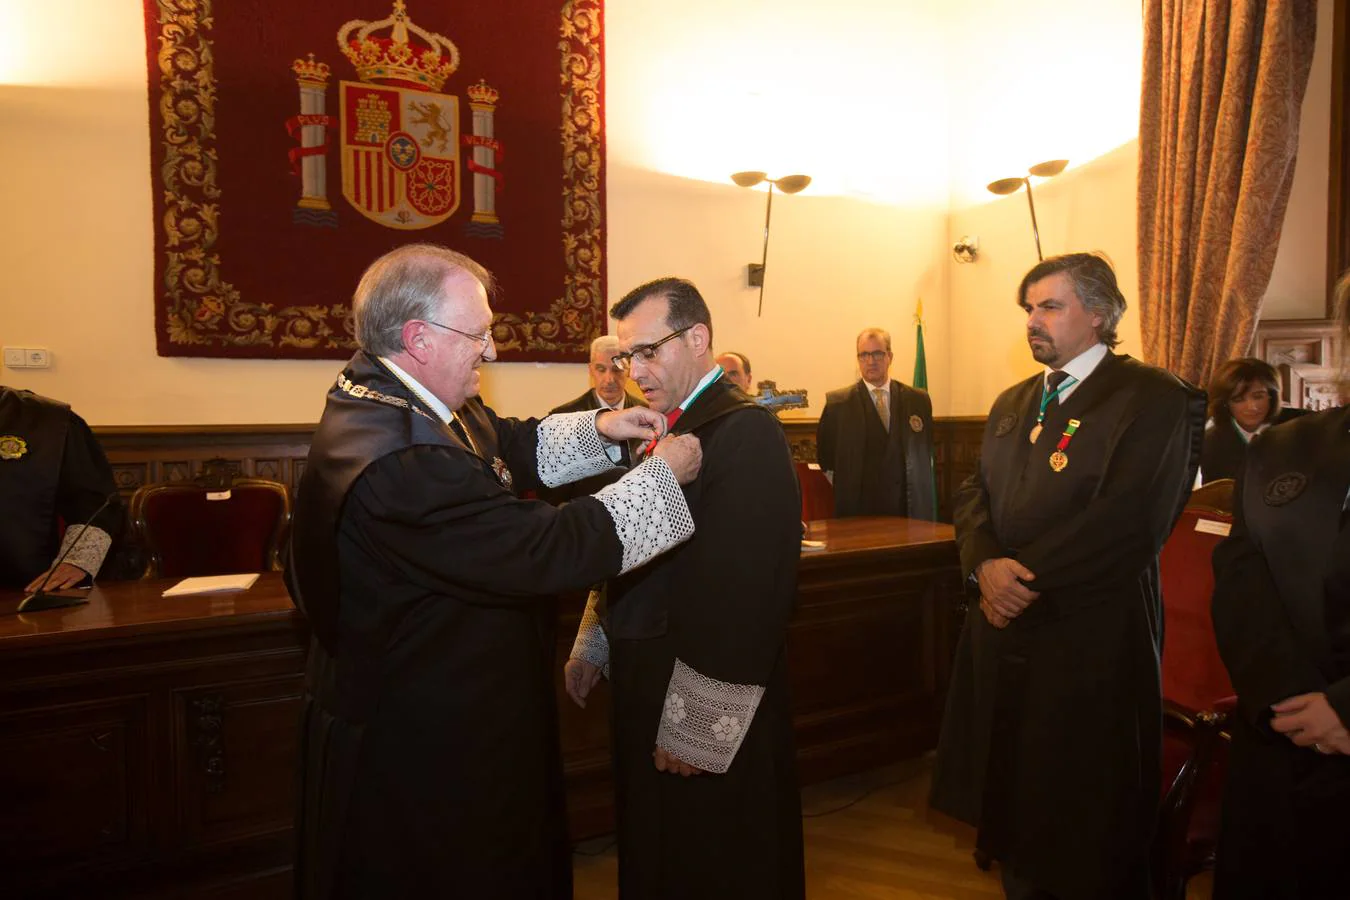 Medalla de Oro al Mérito Profesional para José Esteban Sánchez Montoya en el acto institucional del Colegio de Graduados Sociales de Granada